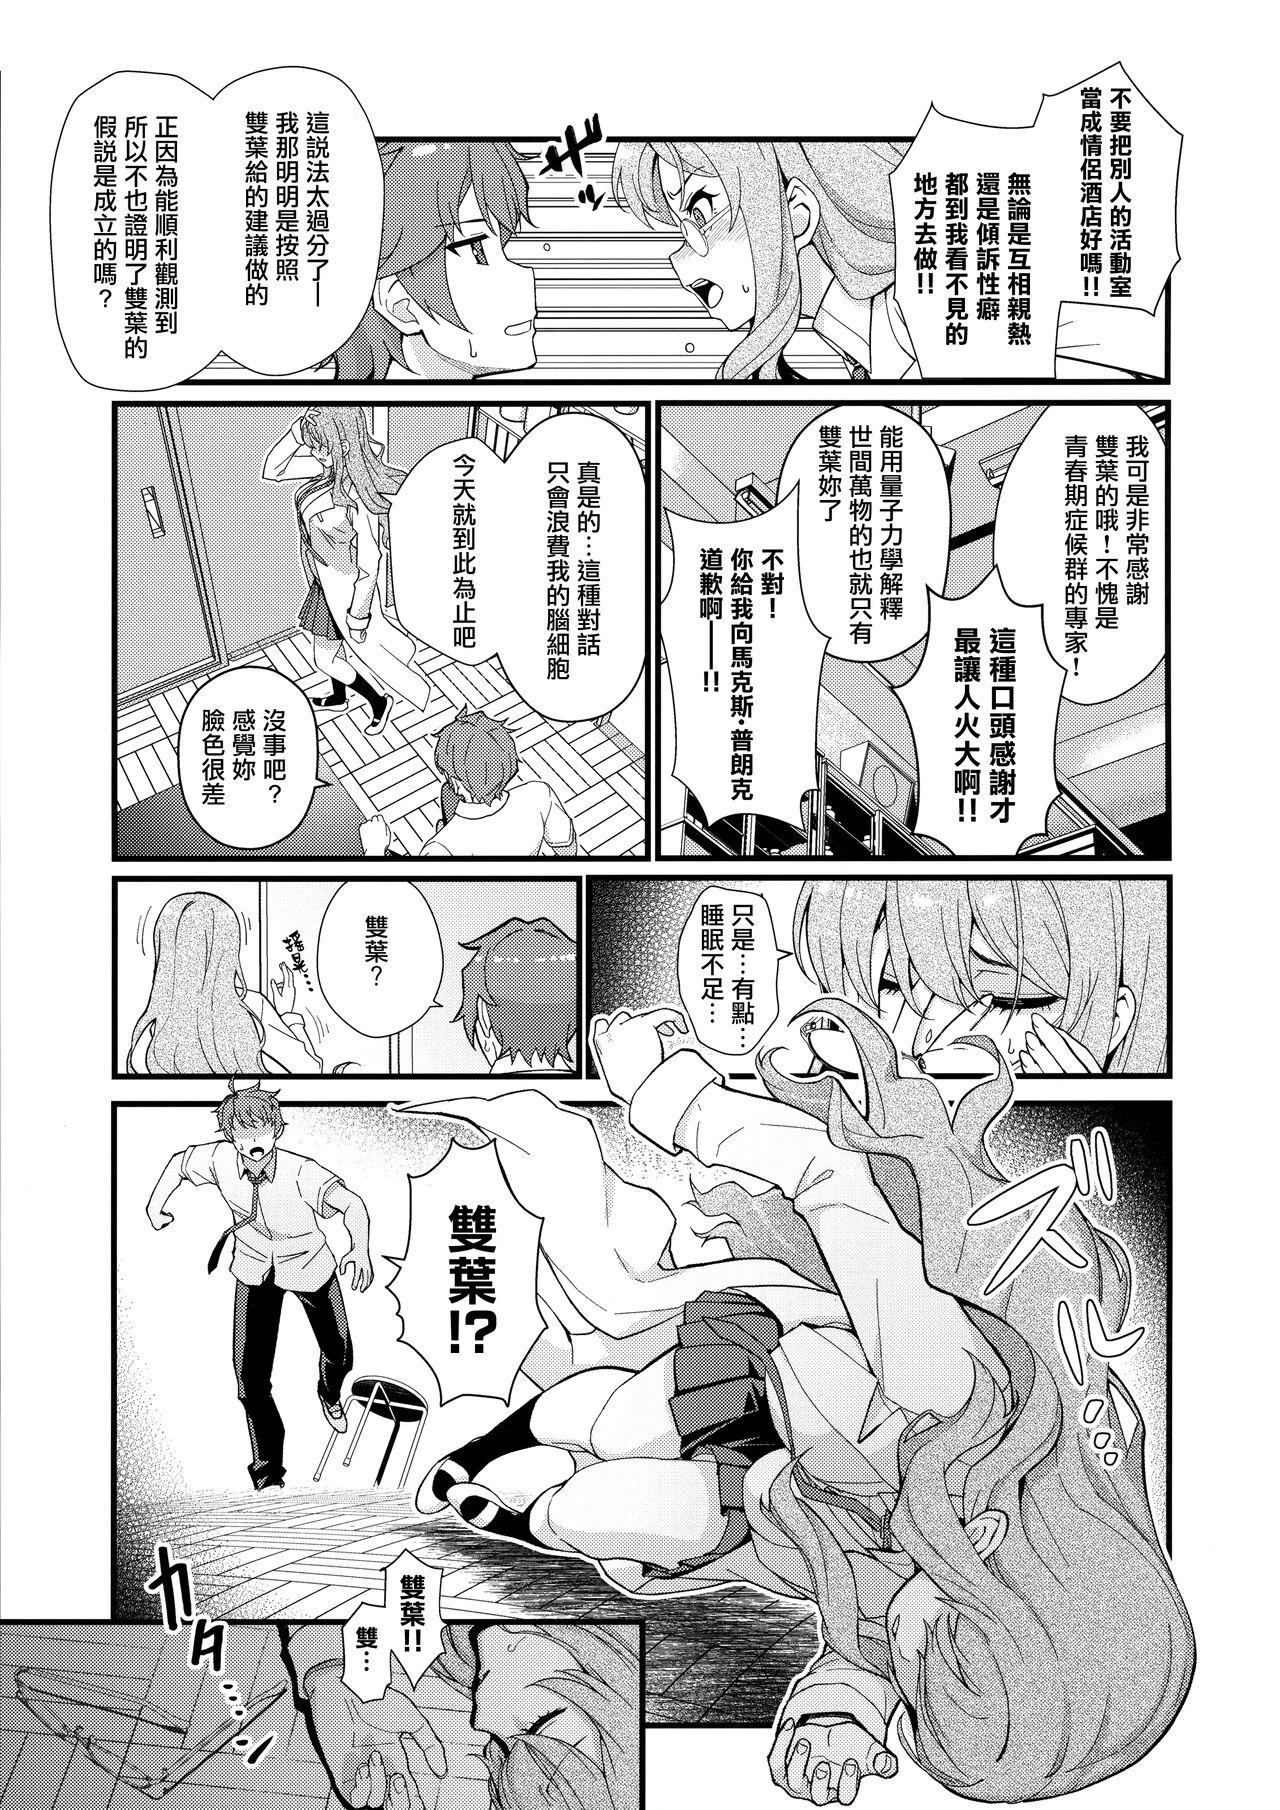 Pasivo MULTI REALITY - Seishun buta yarou wa bunny girl senpai no yume o minai Interracial Porn - Page 5